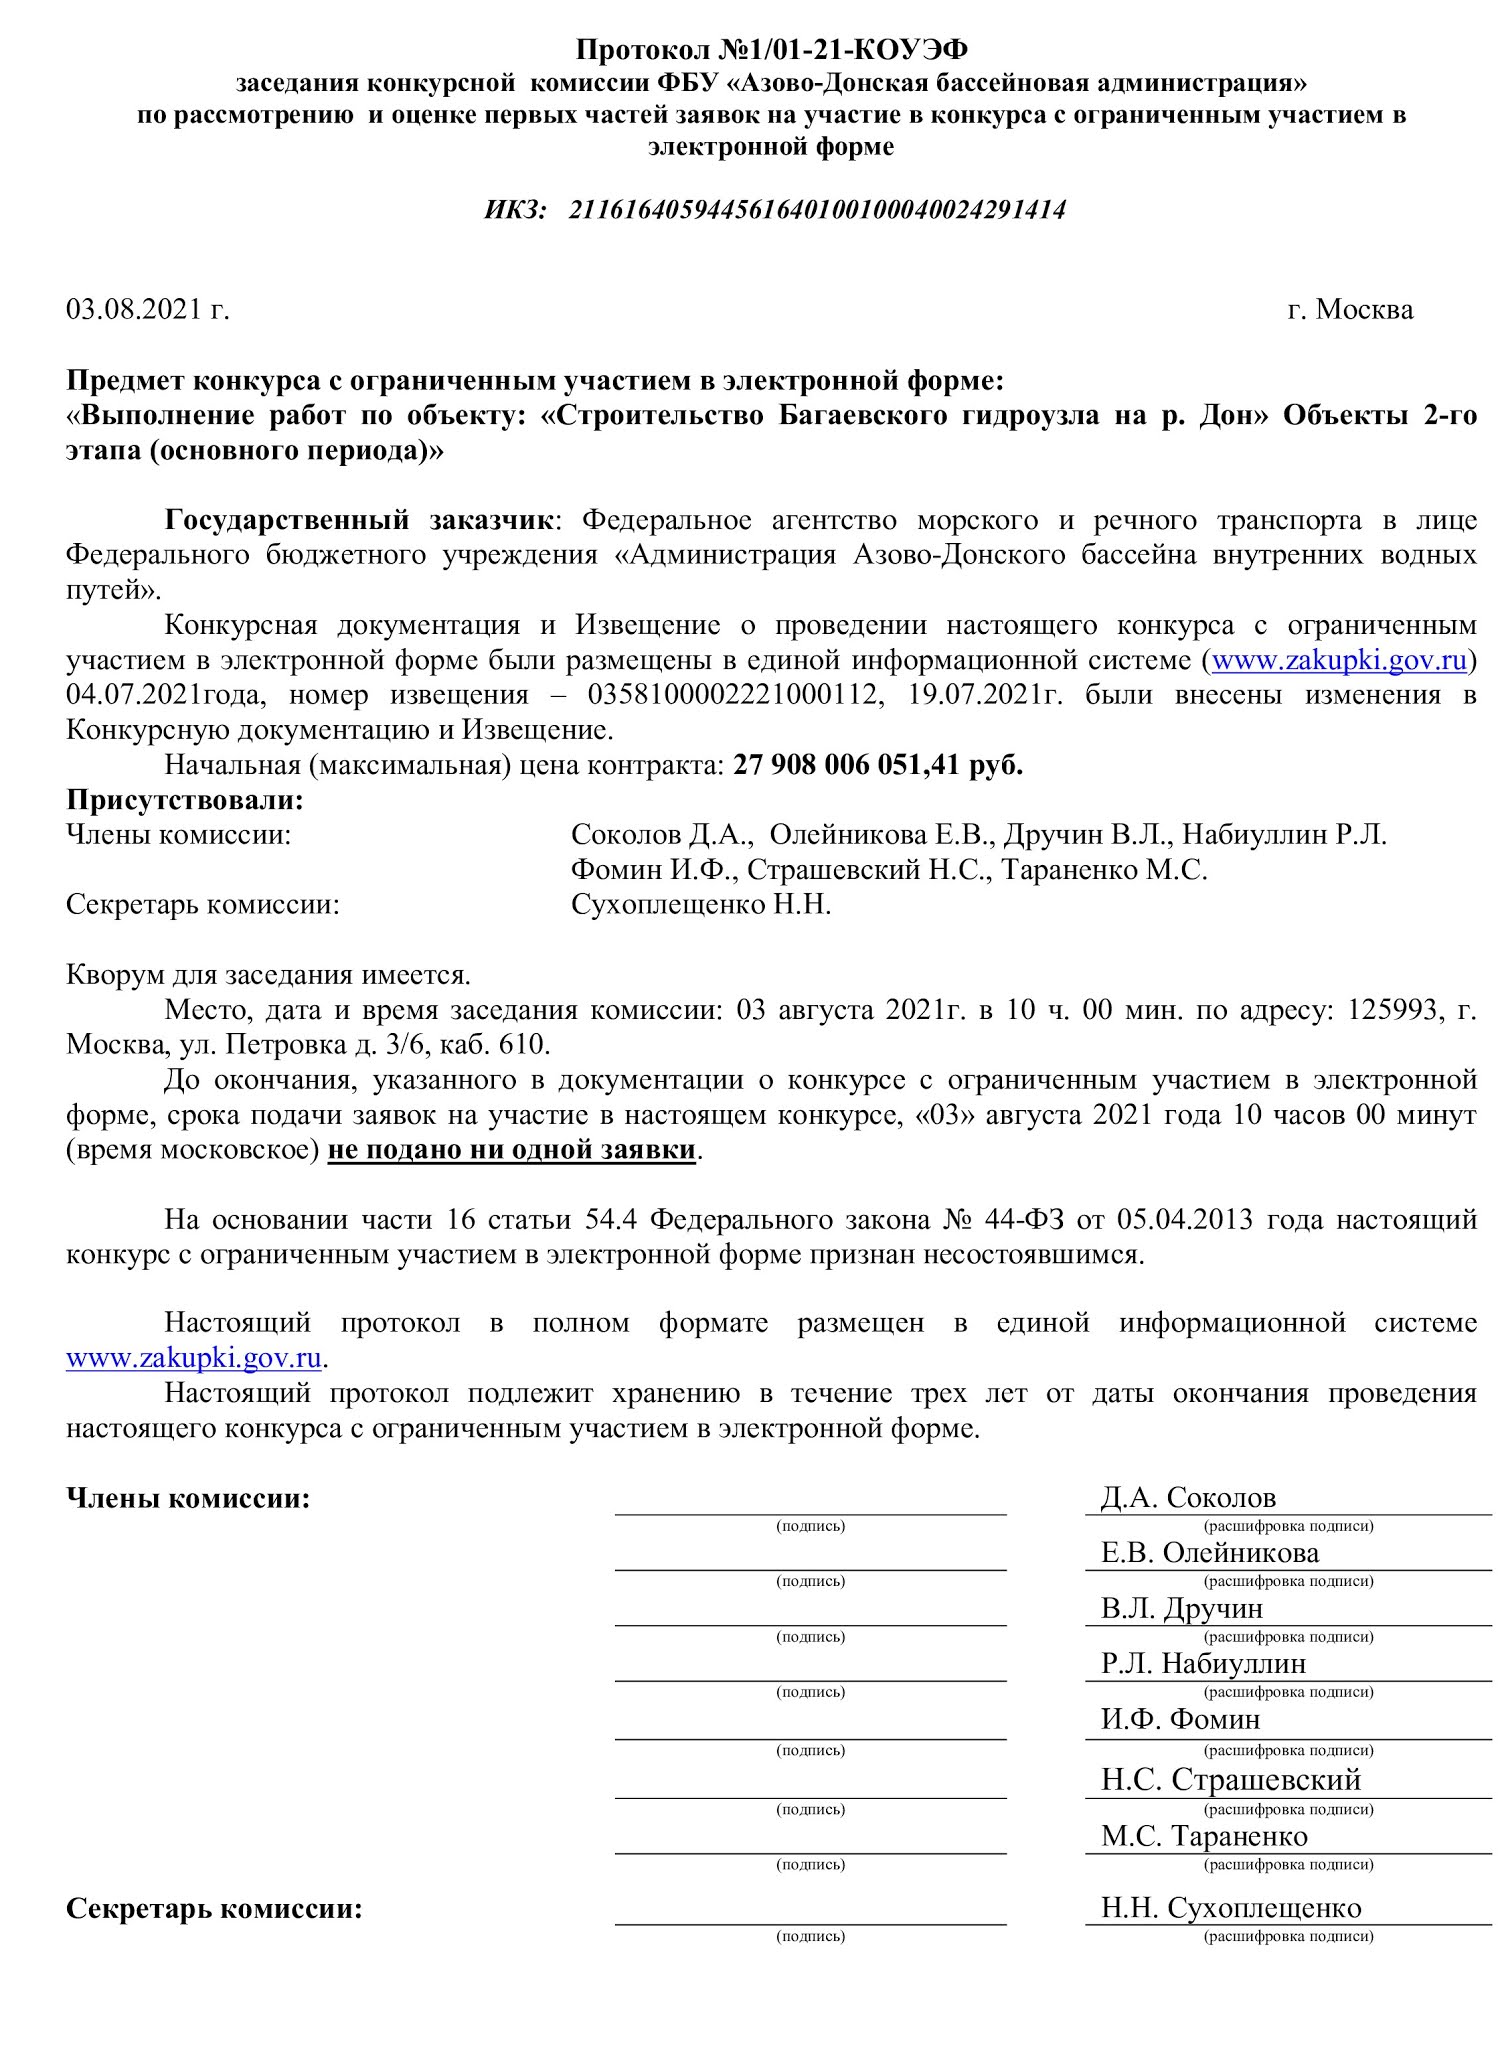 Протокол конкурсной комиссии по второму этапу строительства Багаевского гидроузла